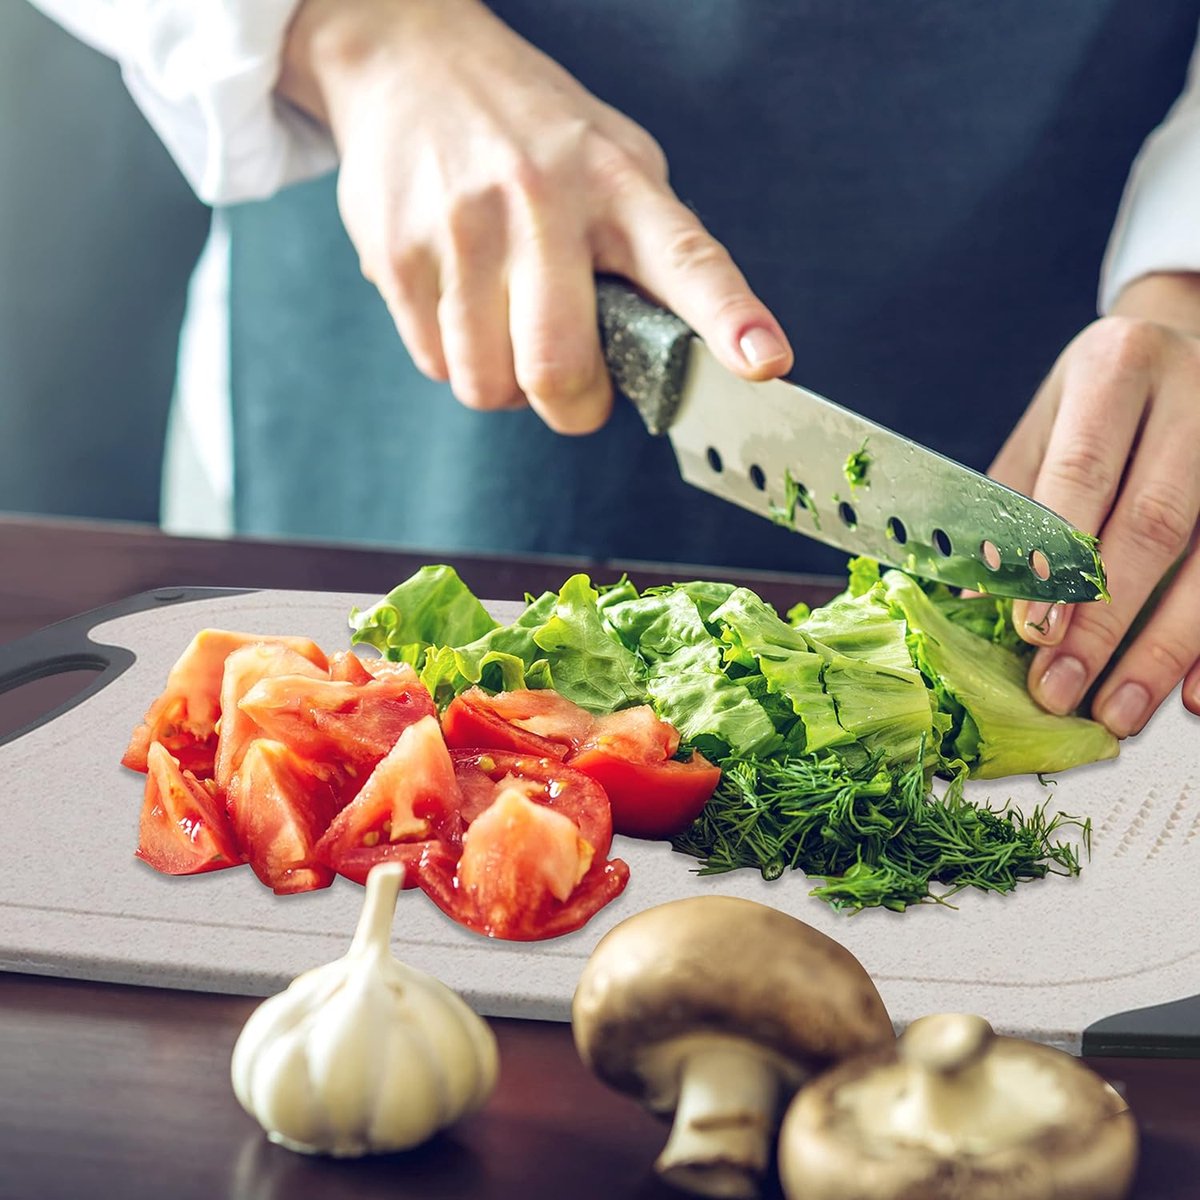 Generic Couteau à éplucher les légumes, couteau à éplucher les